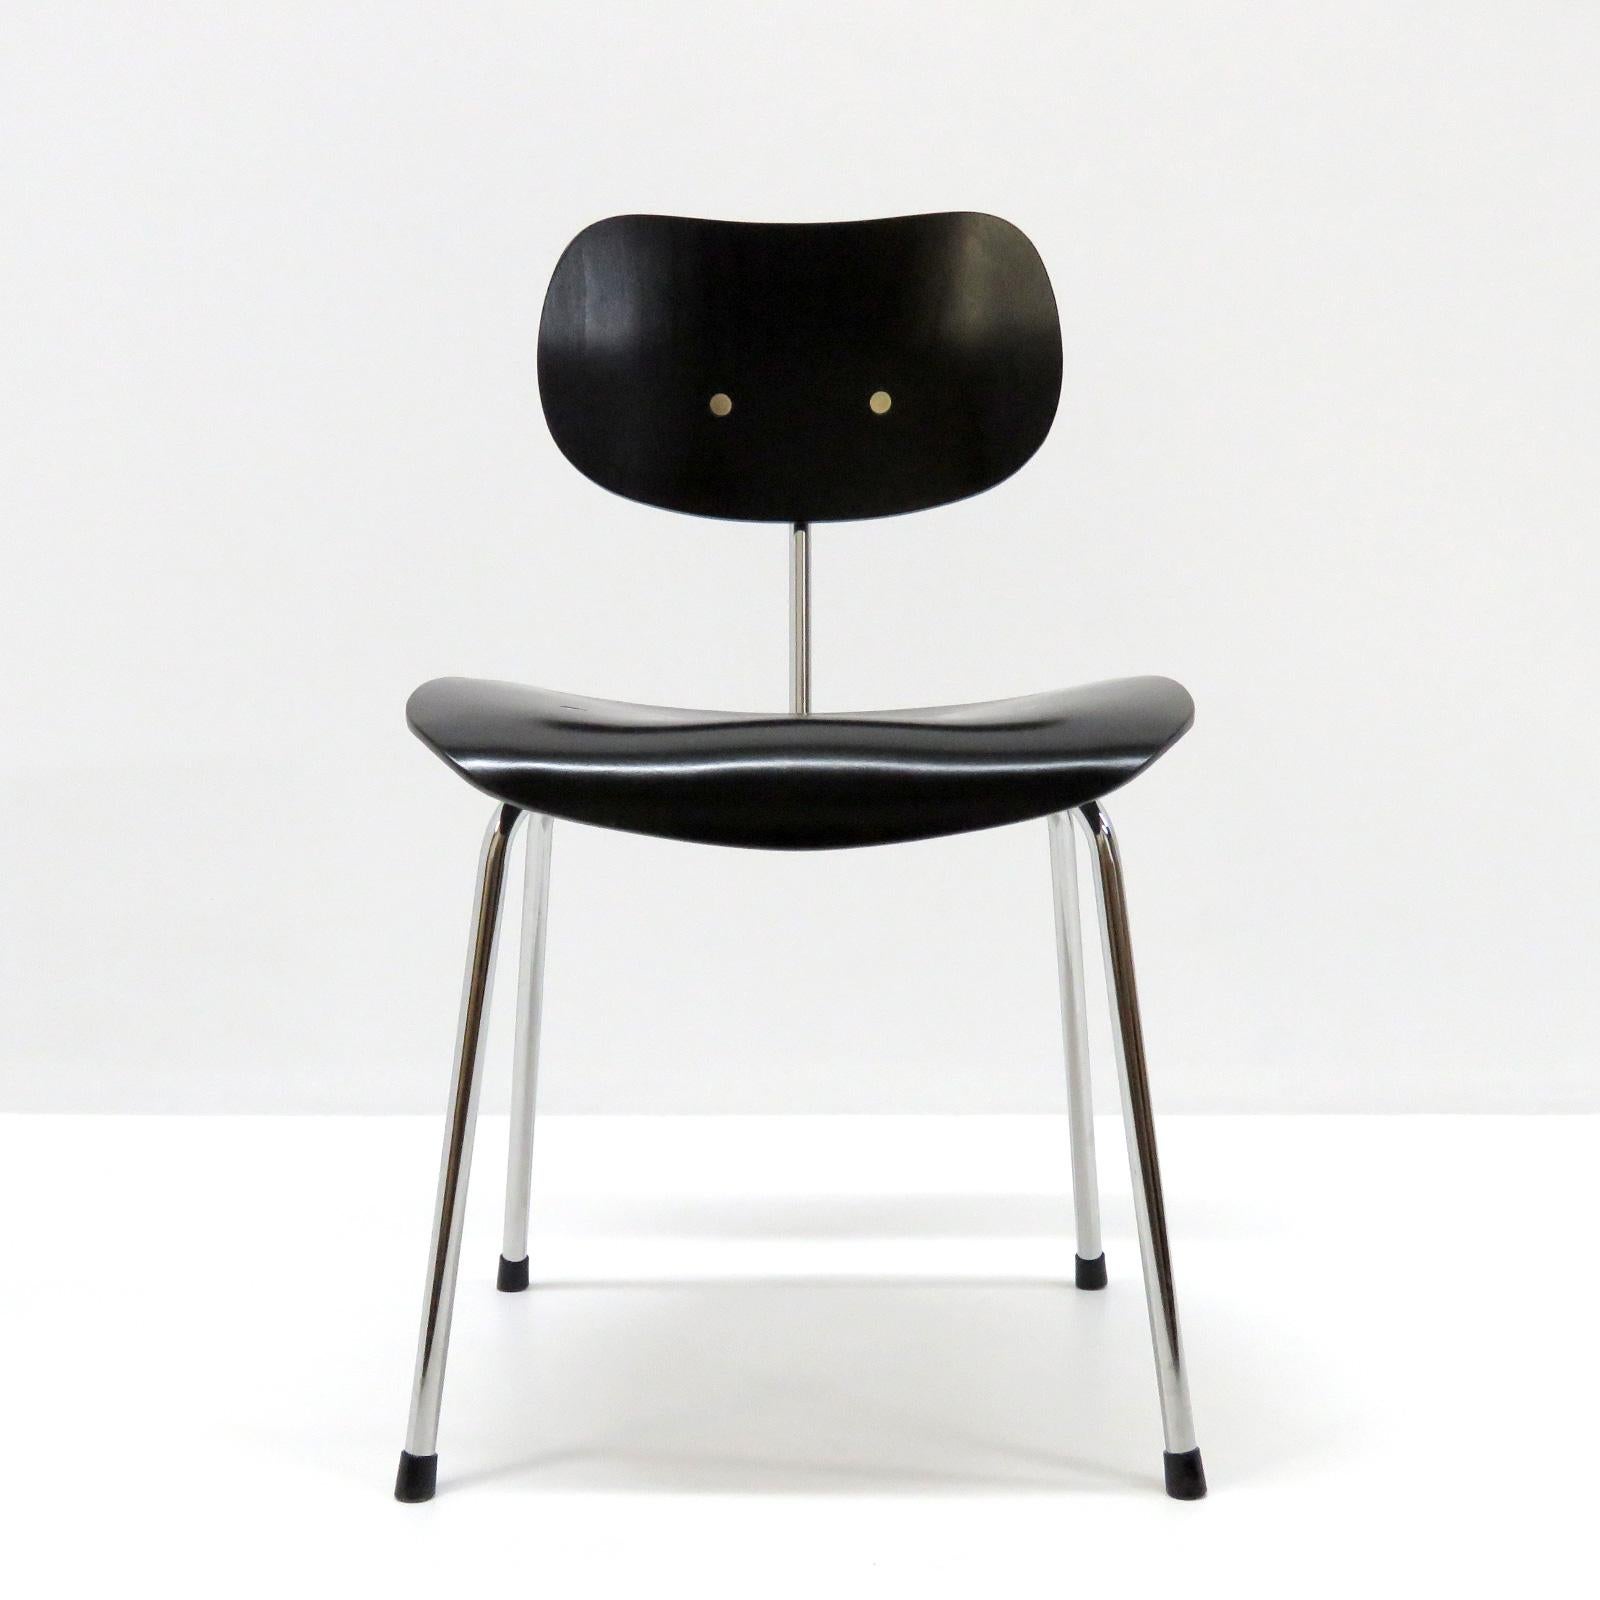 Merveilleuses chaises de salle à manger modèle SE 68 d'Egon Eiermann pour Wilde & Steele, en tube d'acier chromé avec assise ergonomique en bois peint en noir, marquées. Quatre chaises disponibles. Les prix sont fixés à l'unité.